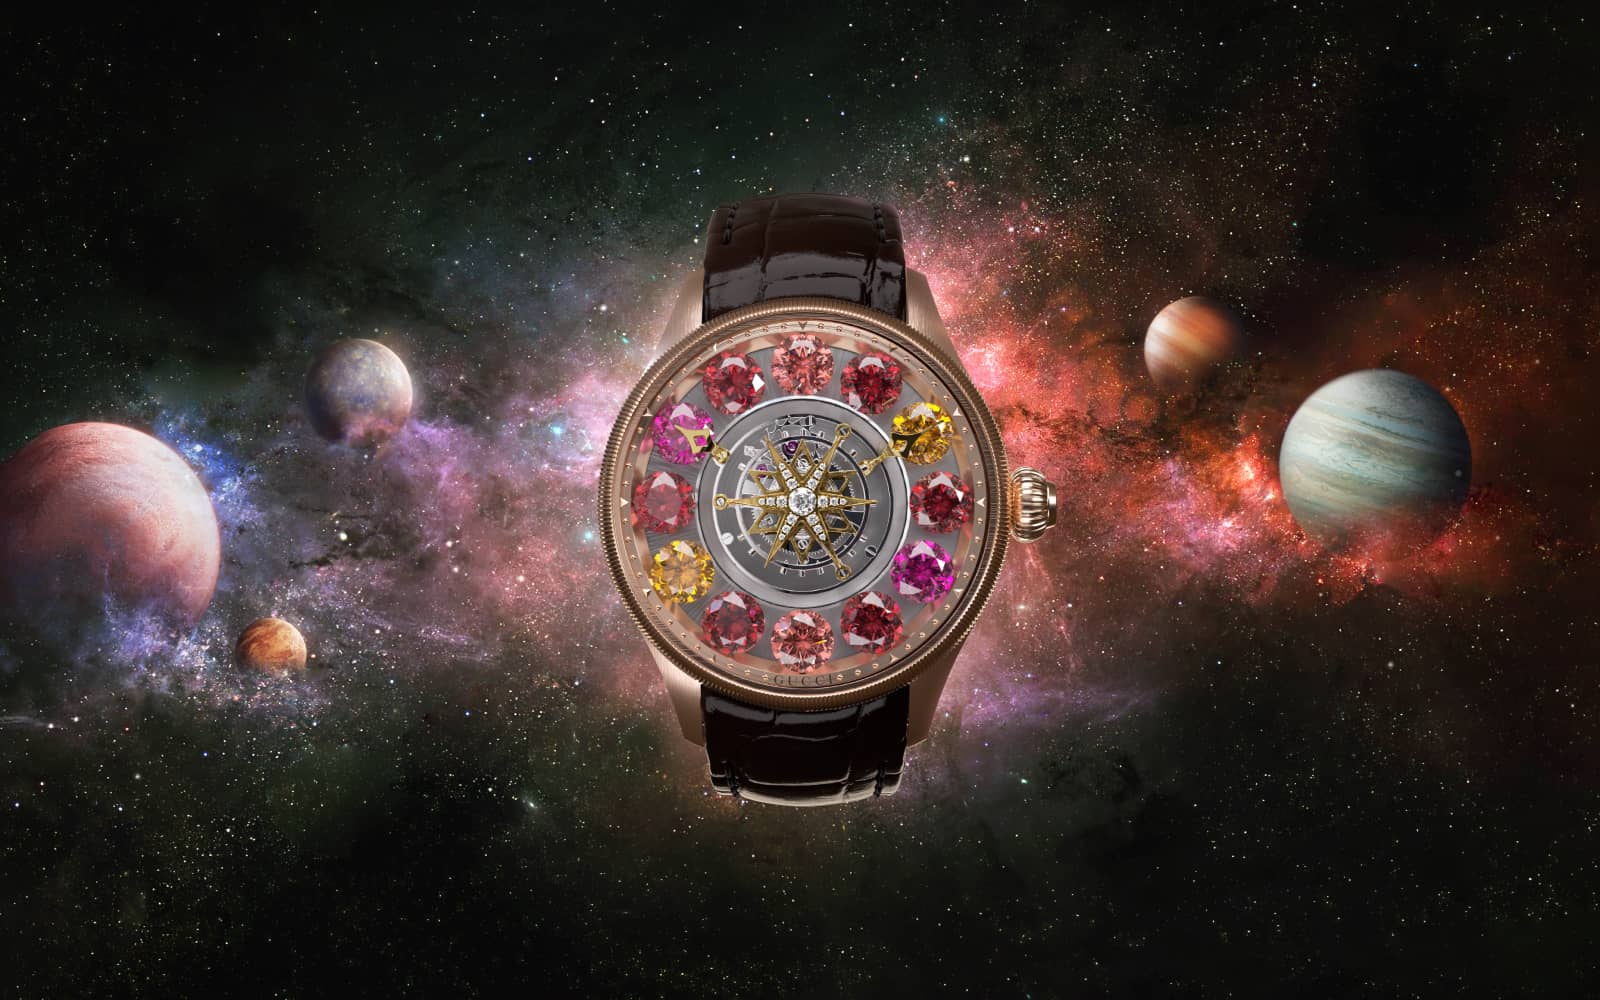 Gucci G-Timeless Planetarium High Jewellery watch featuring rubies, fire opals, pink tourmaline and mandarin garnet